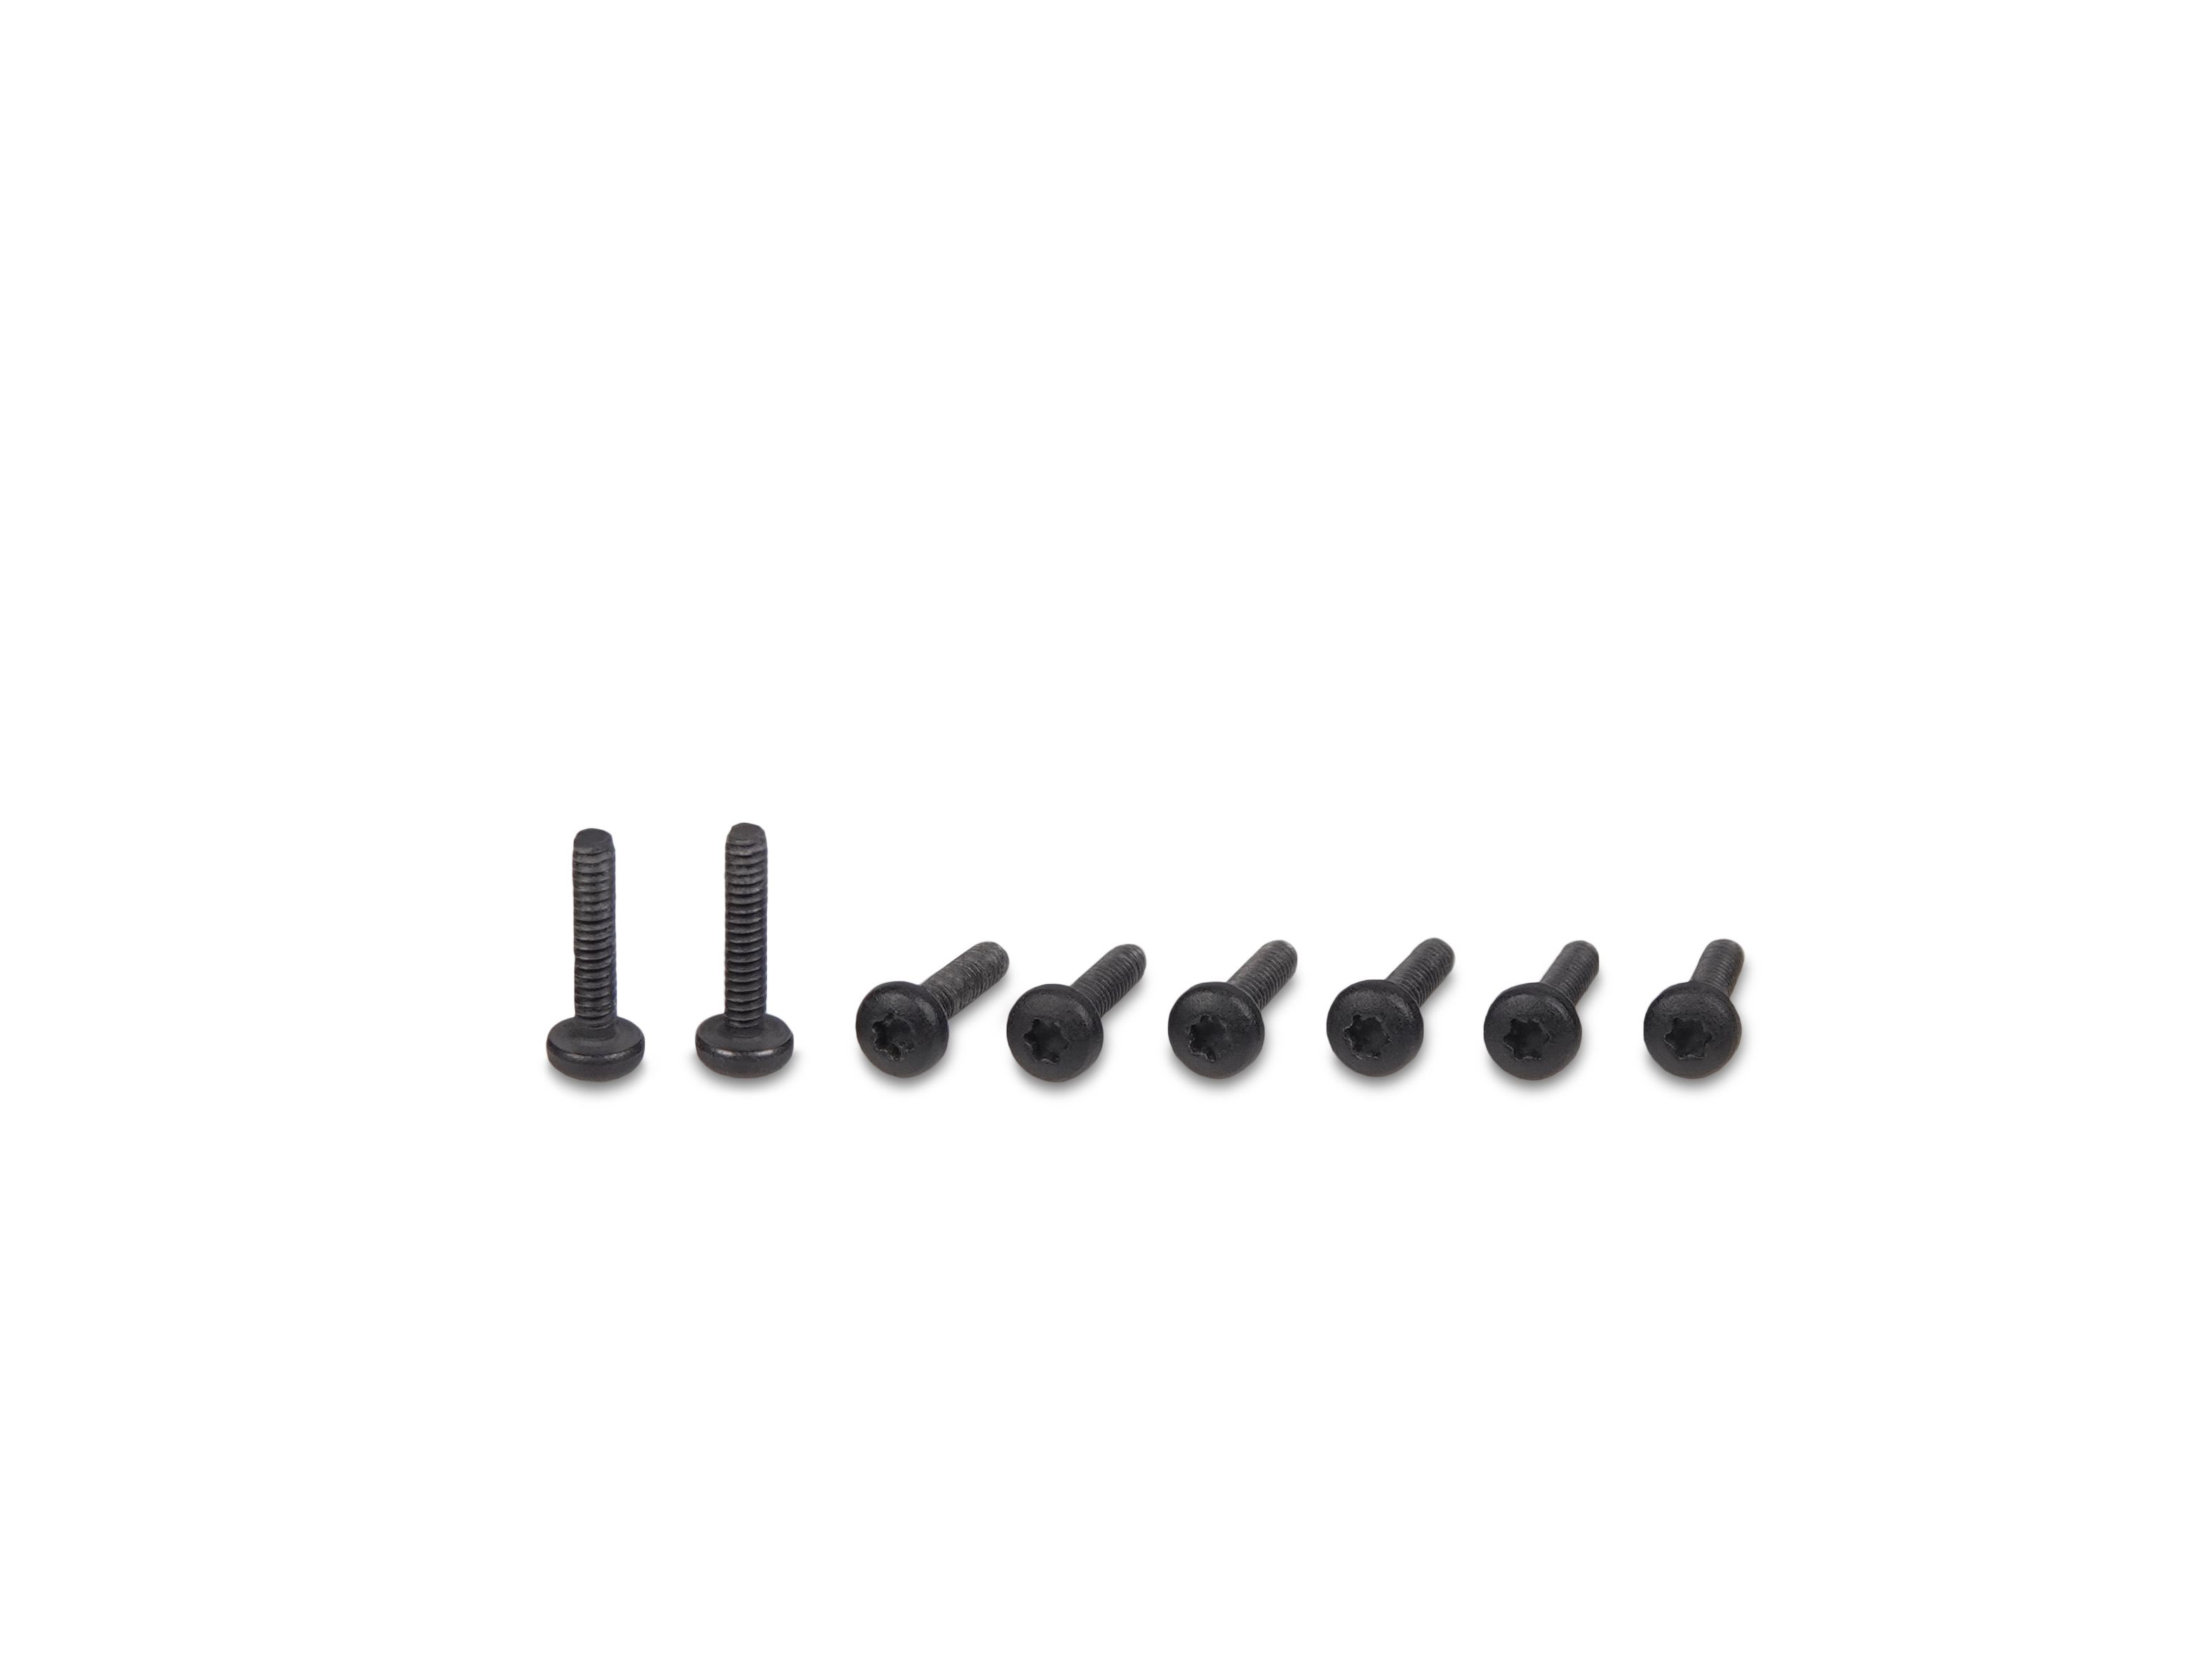 SL Mono/Penta screws